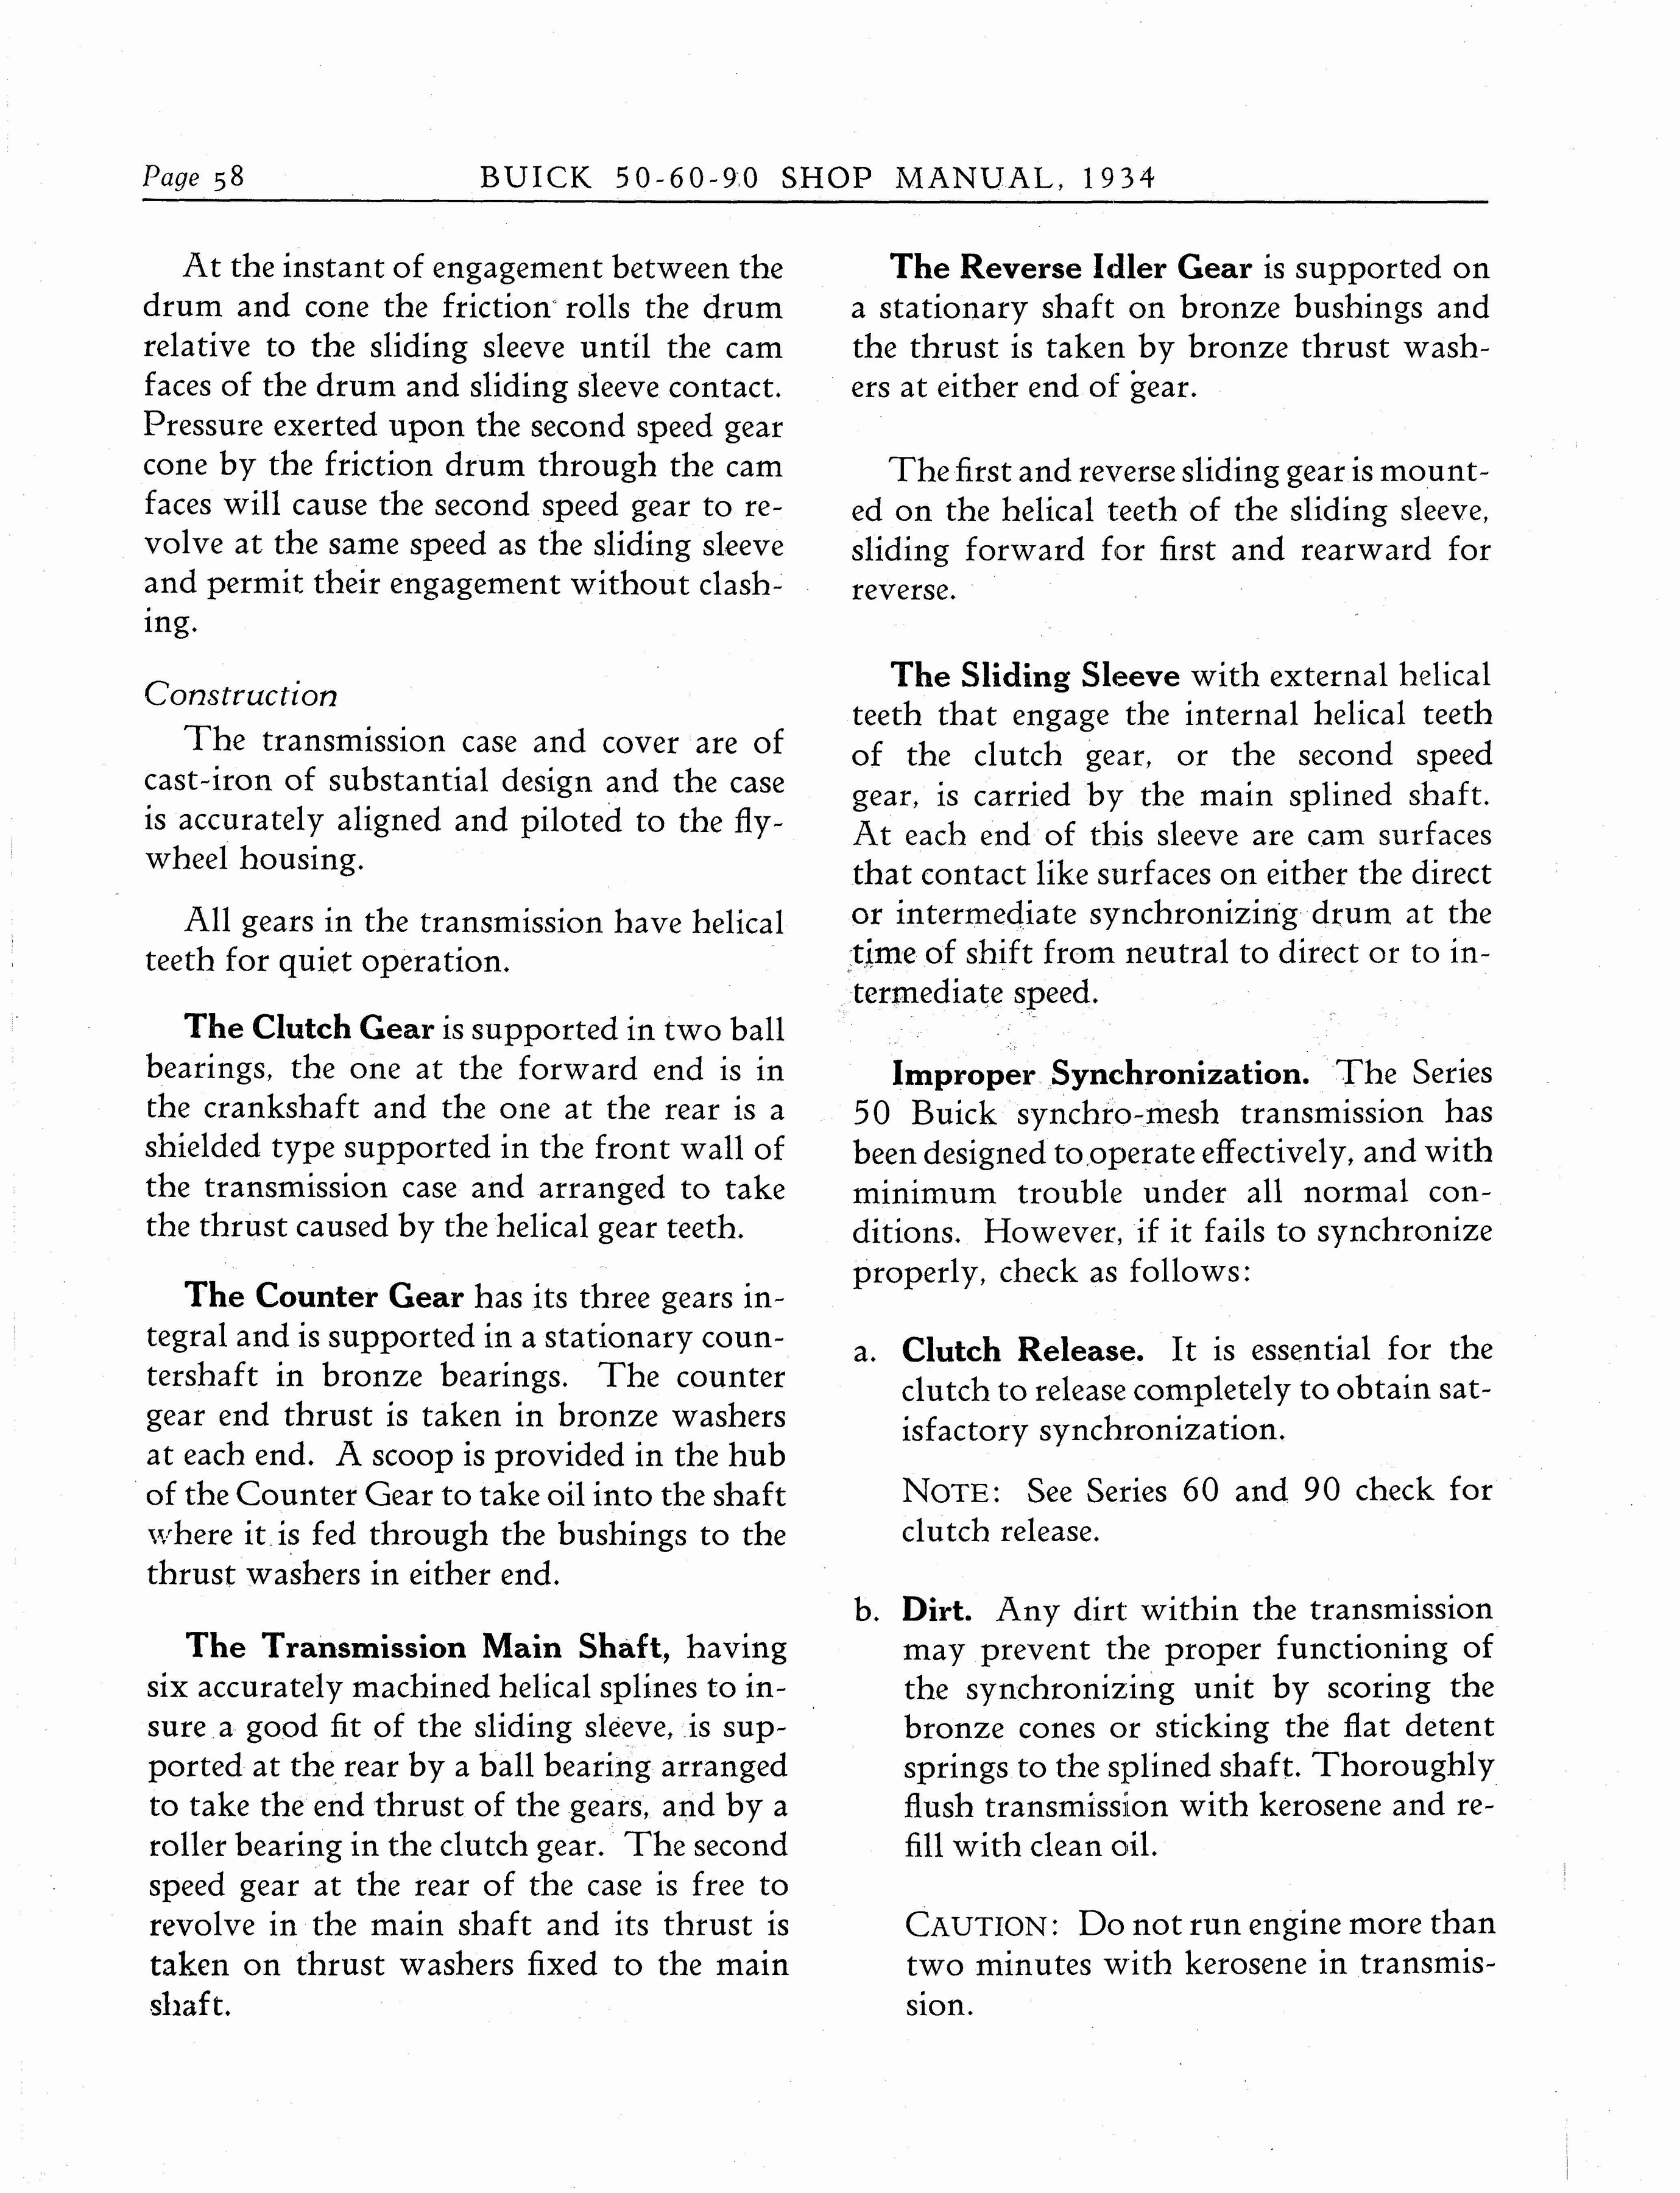 n_1934 Buick Series 50-60-90 Shop Manual_Page_059.jpg